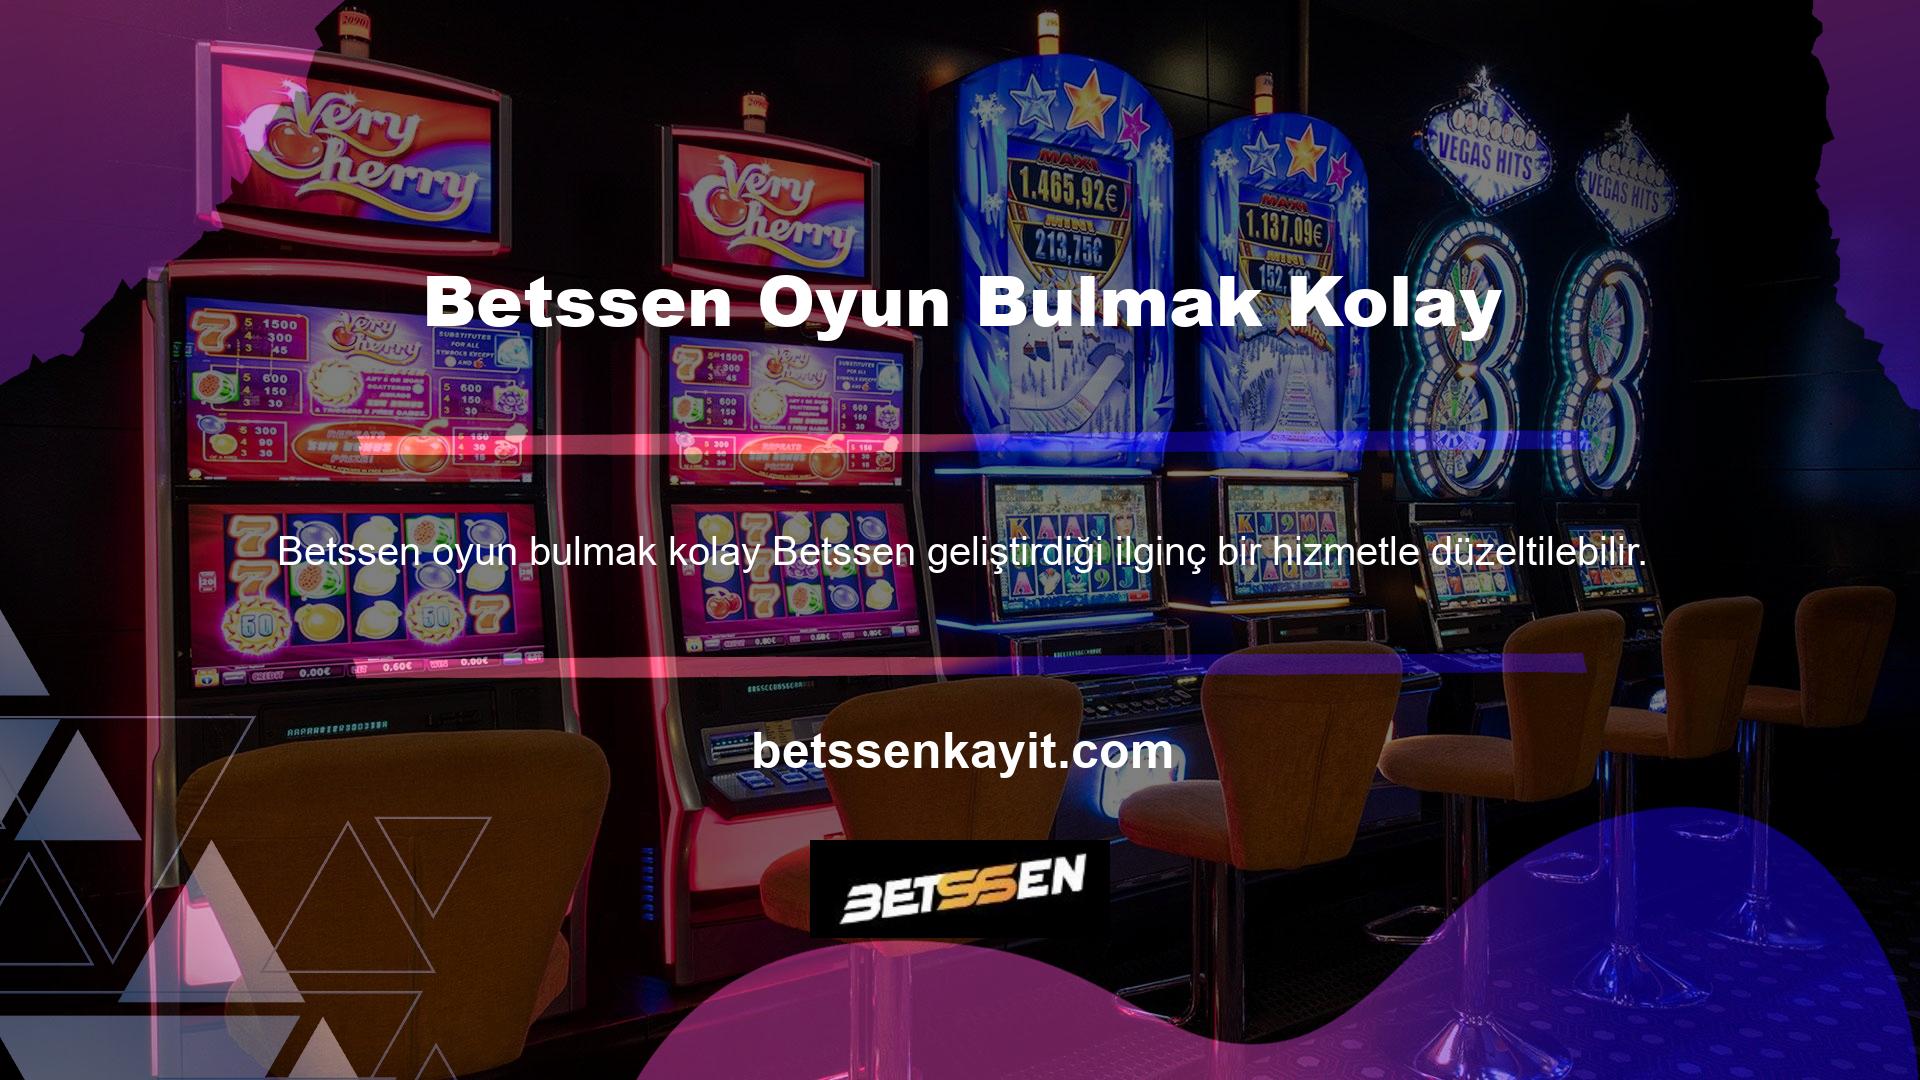 Betssen resmi web sitesinde canlı maçları ücretsiz olarak izleyebilirsiniz